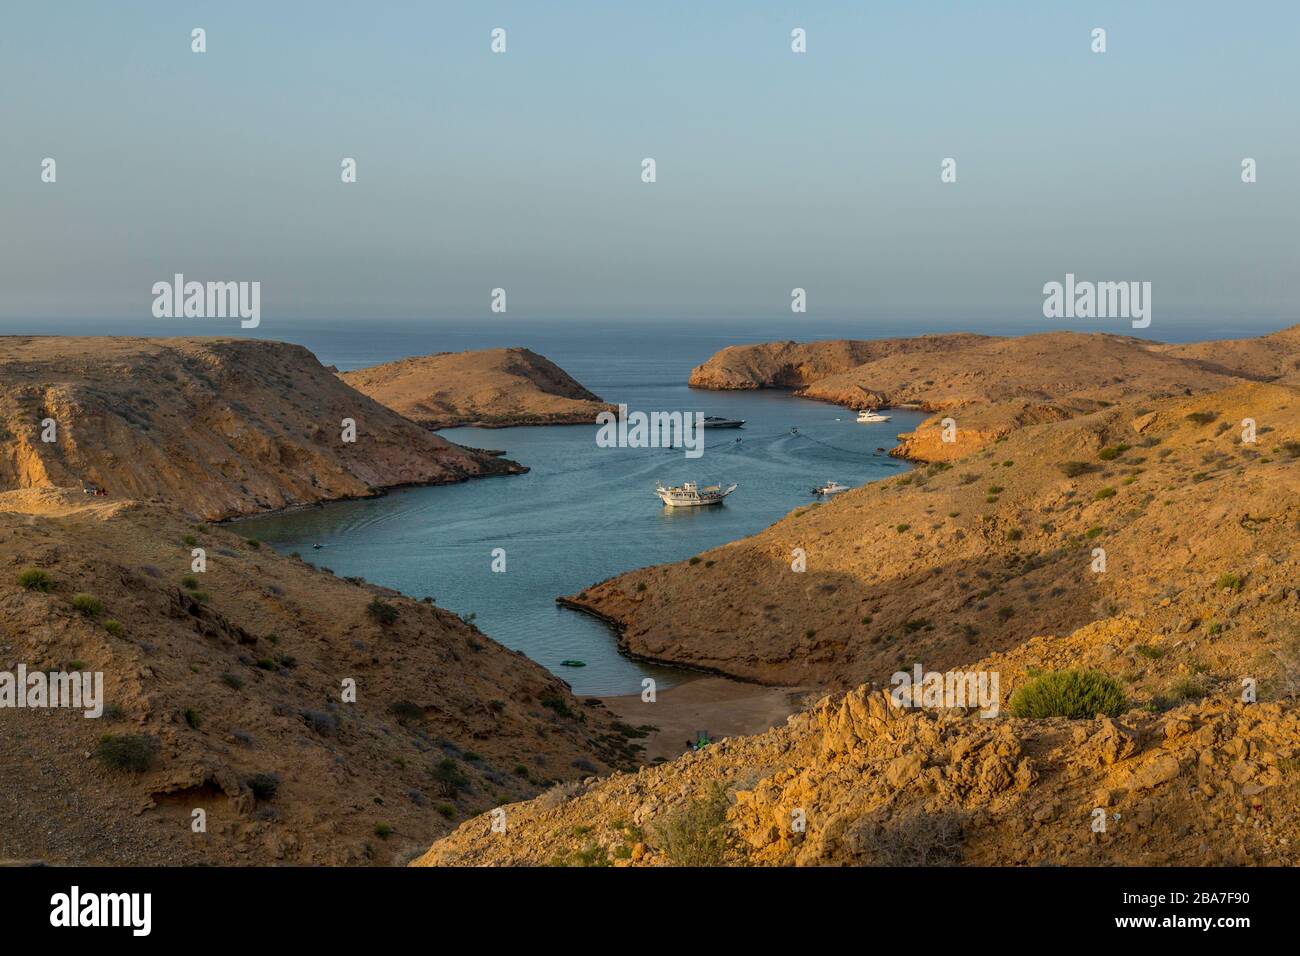 Una bahía en Bander al Khayran, o Bander al Khairan, justo al este de Muscat en Omán. Los barcos de placer se pueden ver en la bahía. Foto de stock